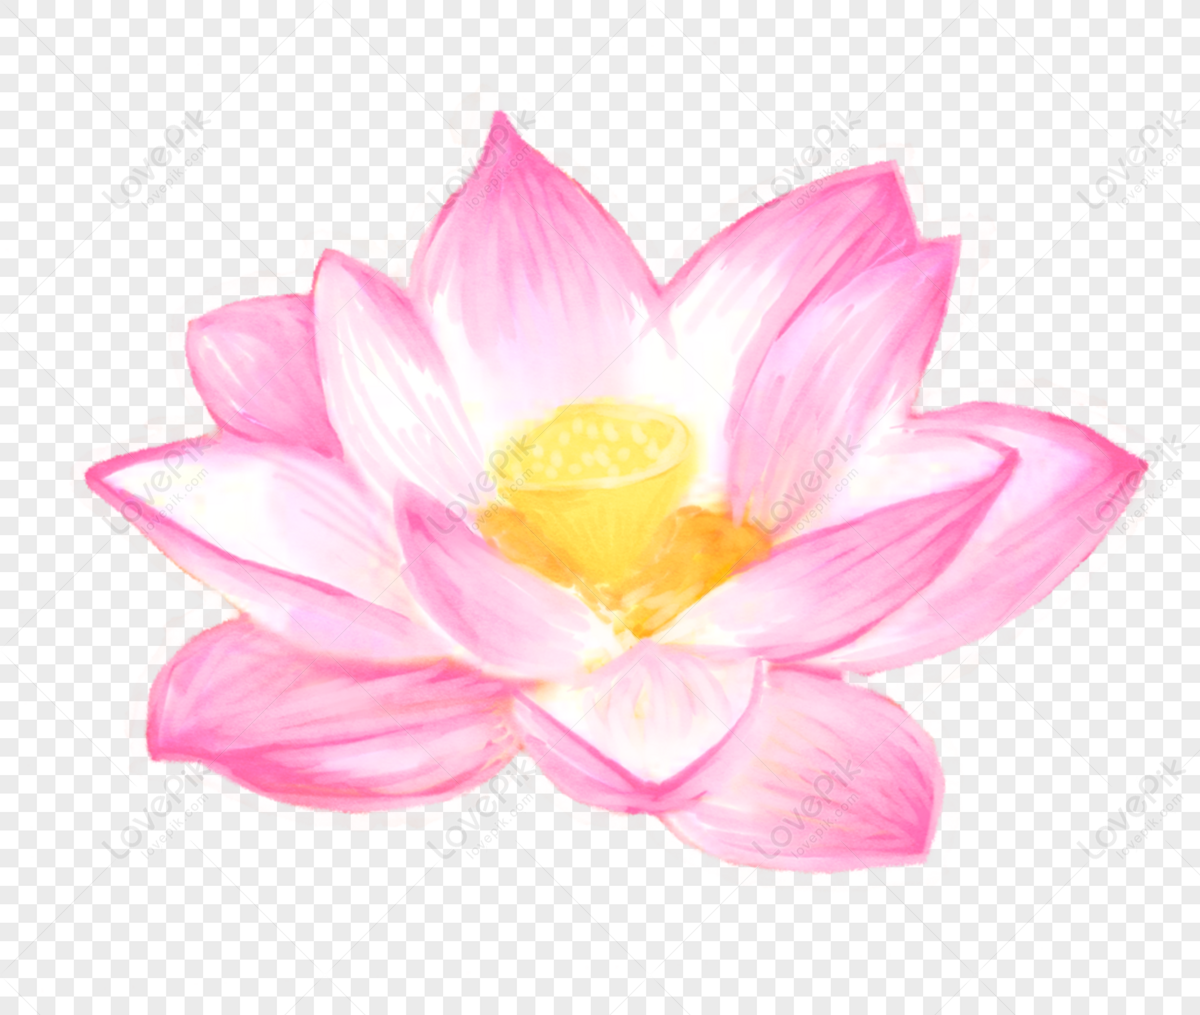 Lotus PNG là hình ảnh đôi họa mà bạn không nên bỏ qua! Với nền trắng trong suốt, bạn có thể sử dụng hình ảnh này để trang trí bất kỳ thiết kế nào, tạo ra một phong cách trang trí mới lạ và độc đáo. Hãy xem hình ảnh liên quan để tìm hiểu thêm về Lotus PNG nhé!